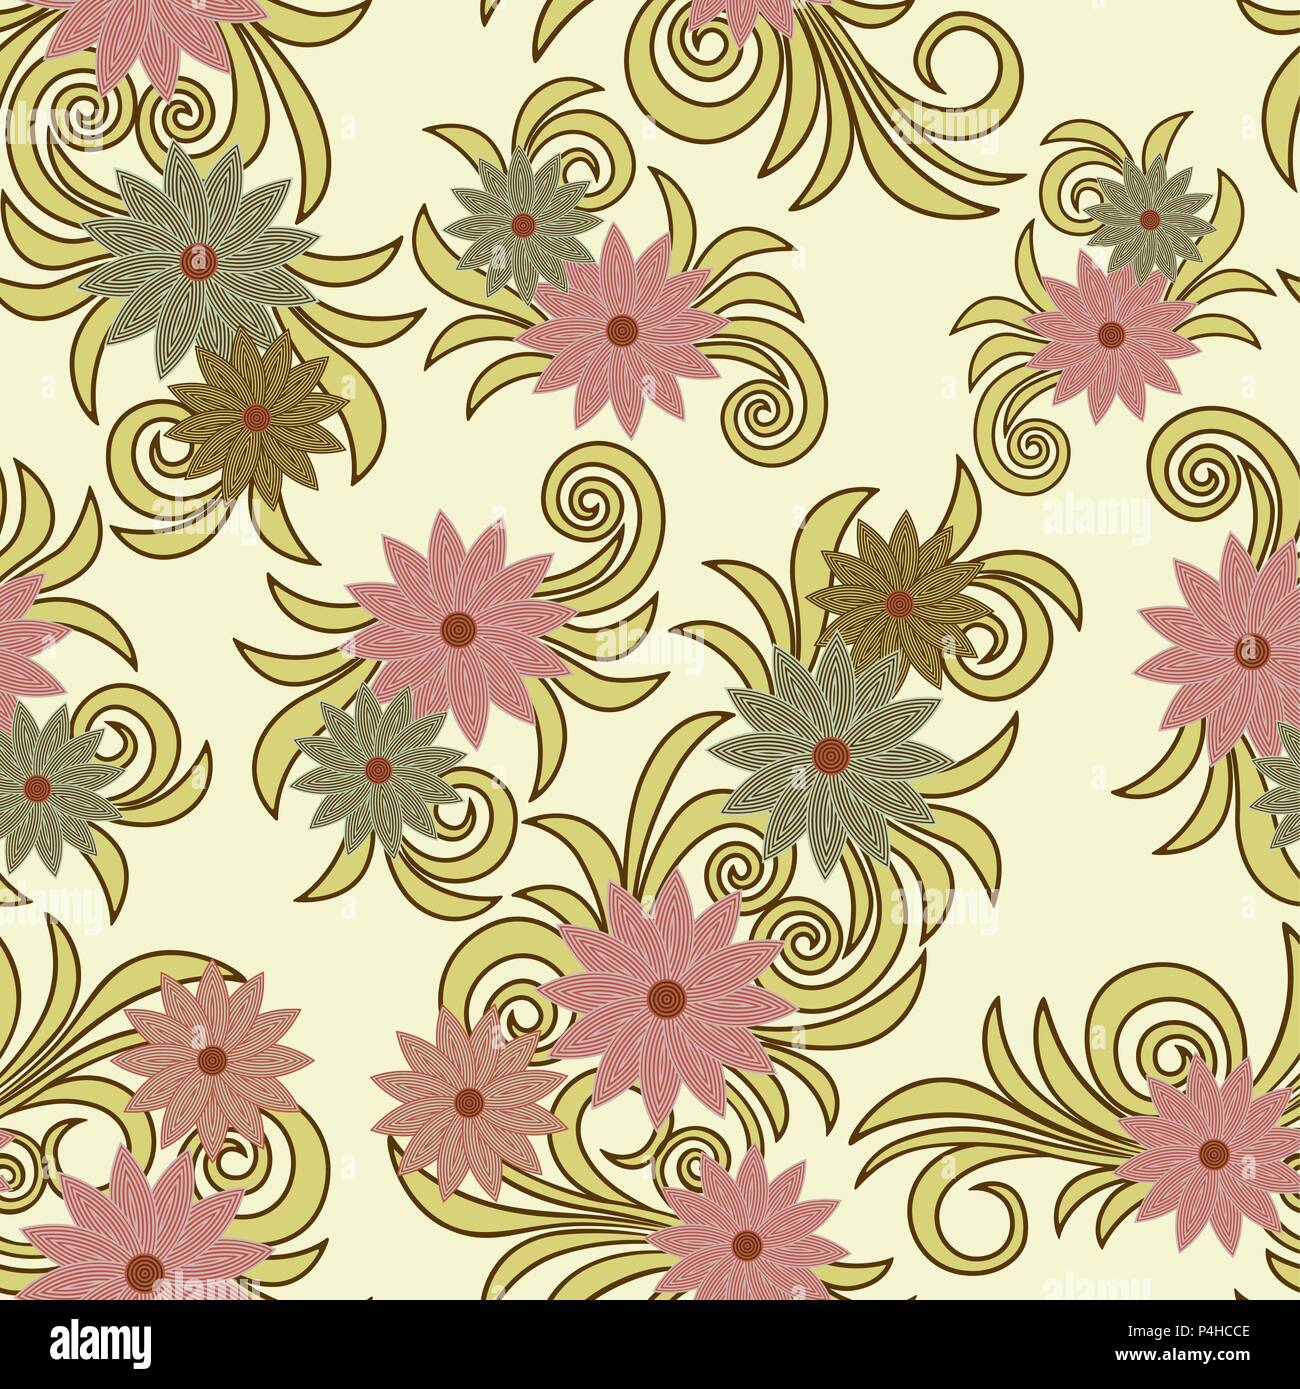 Motif de fleurs délicates en rose pastel et des tons verts sur fond jaune, le coupé comme un vecteur seamless texture tissu Illustration de Vecteur